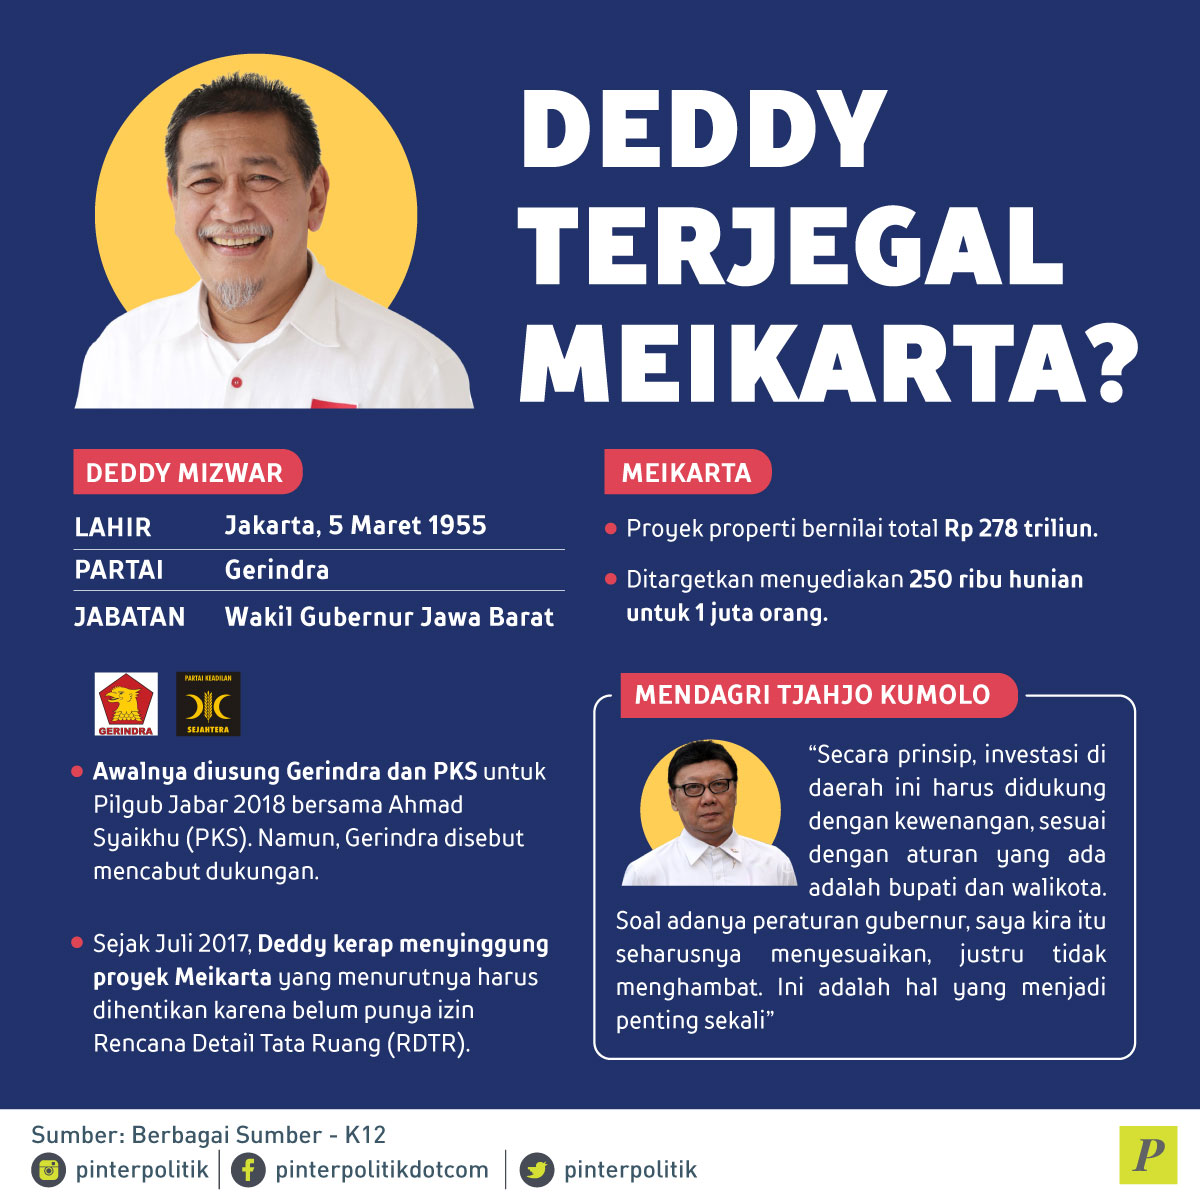 Deddy Terjegal Meikarta